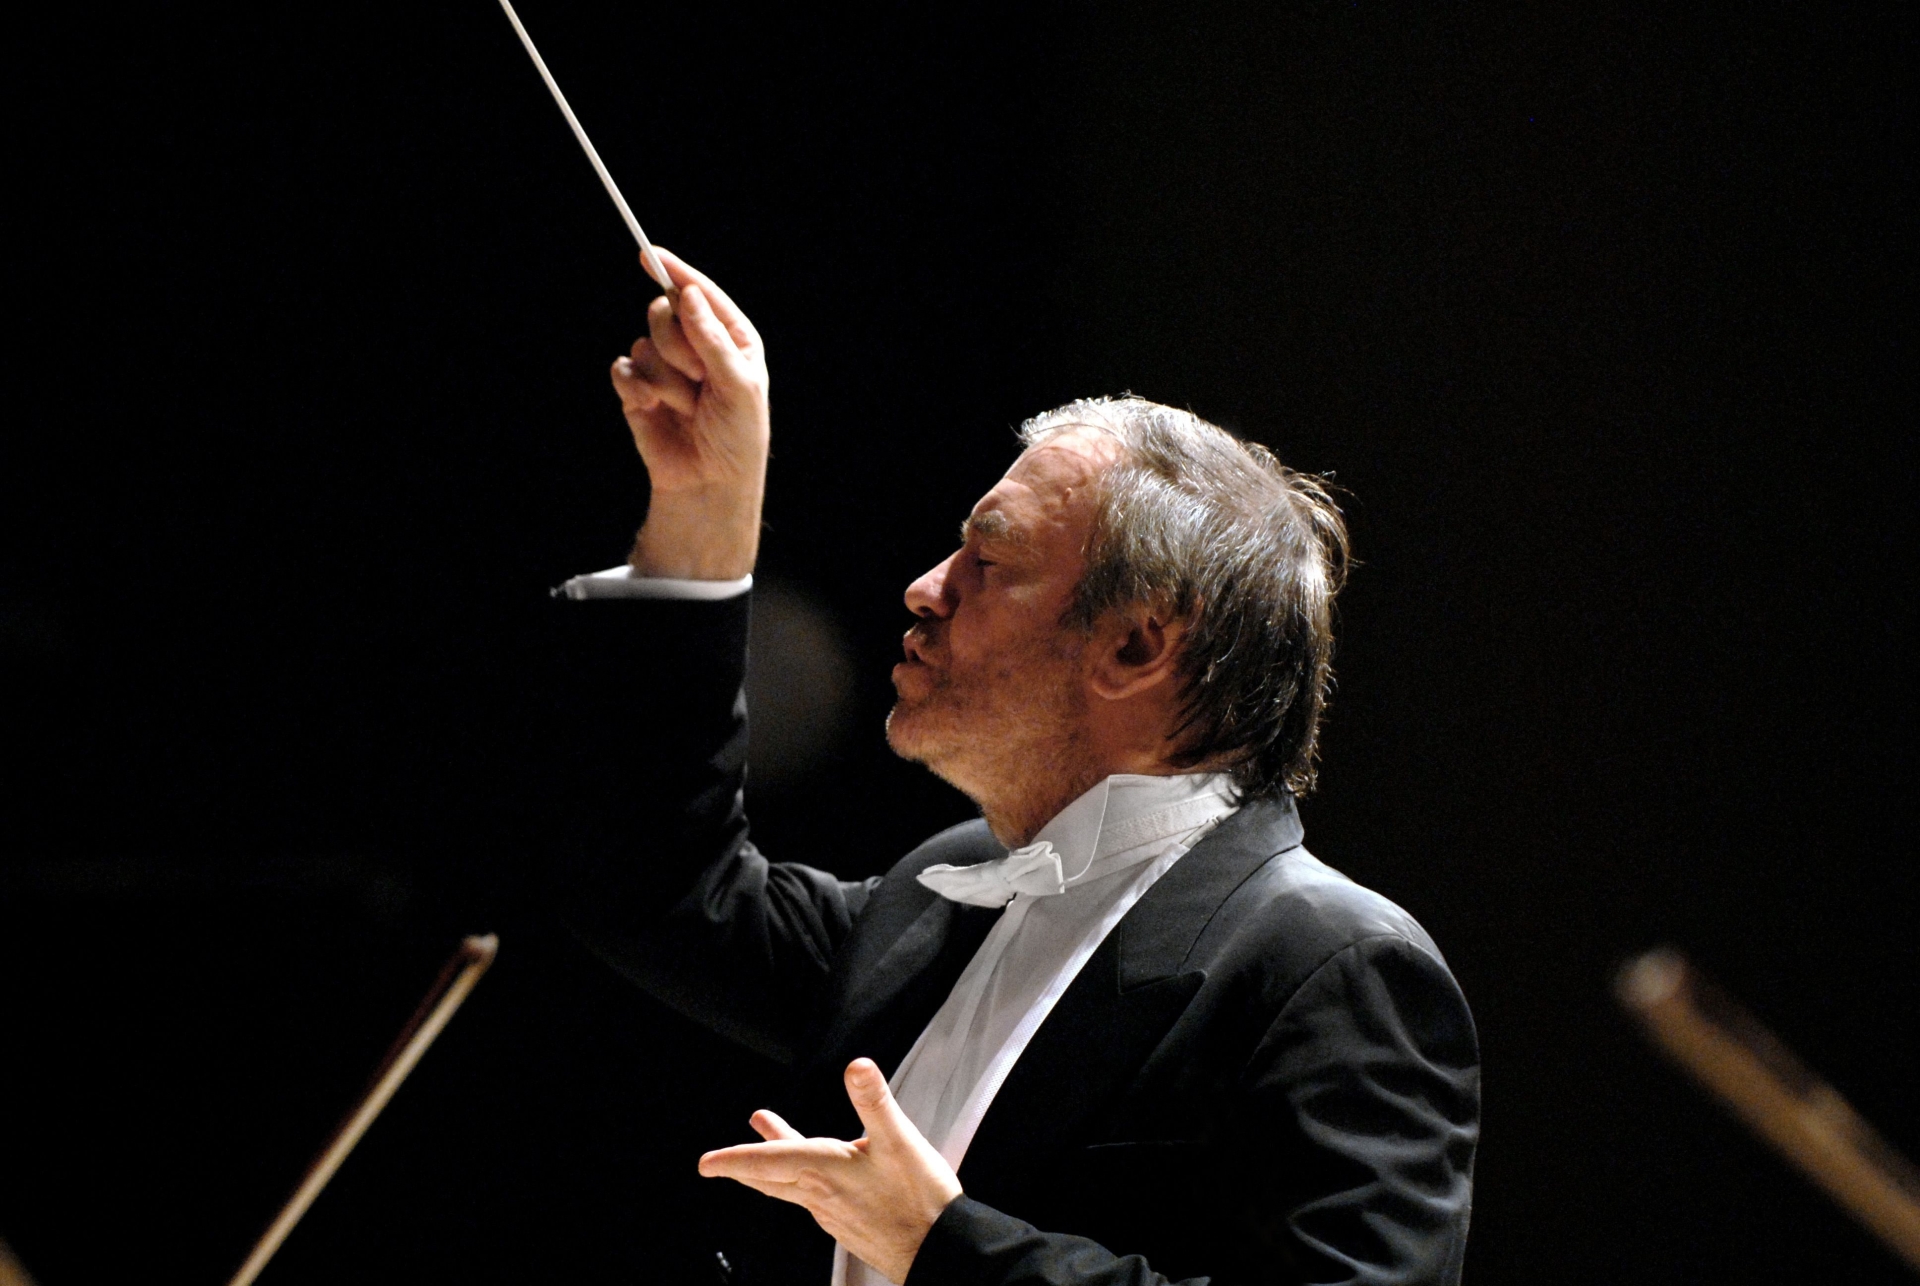 Le chef russe Valery Gergiev dirigera le Verbier Festival Chamber Orchestra vendredi lors de la soirée d'ouverture.